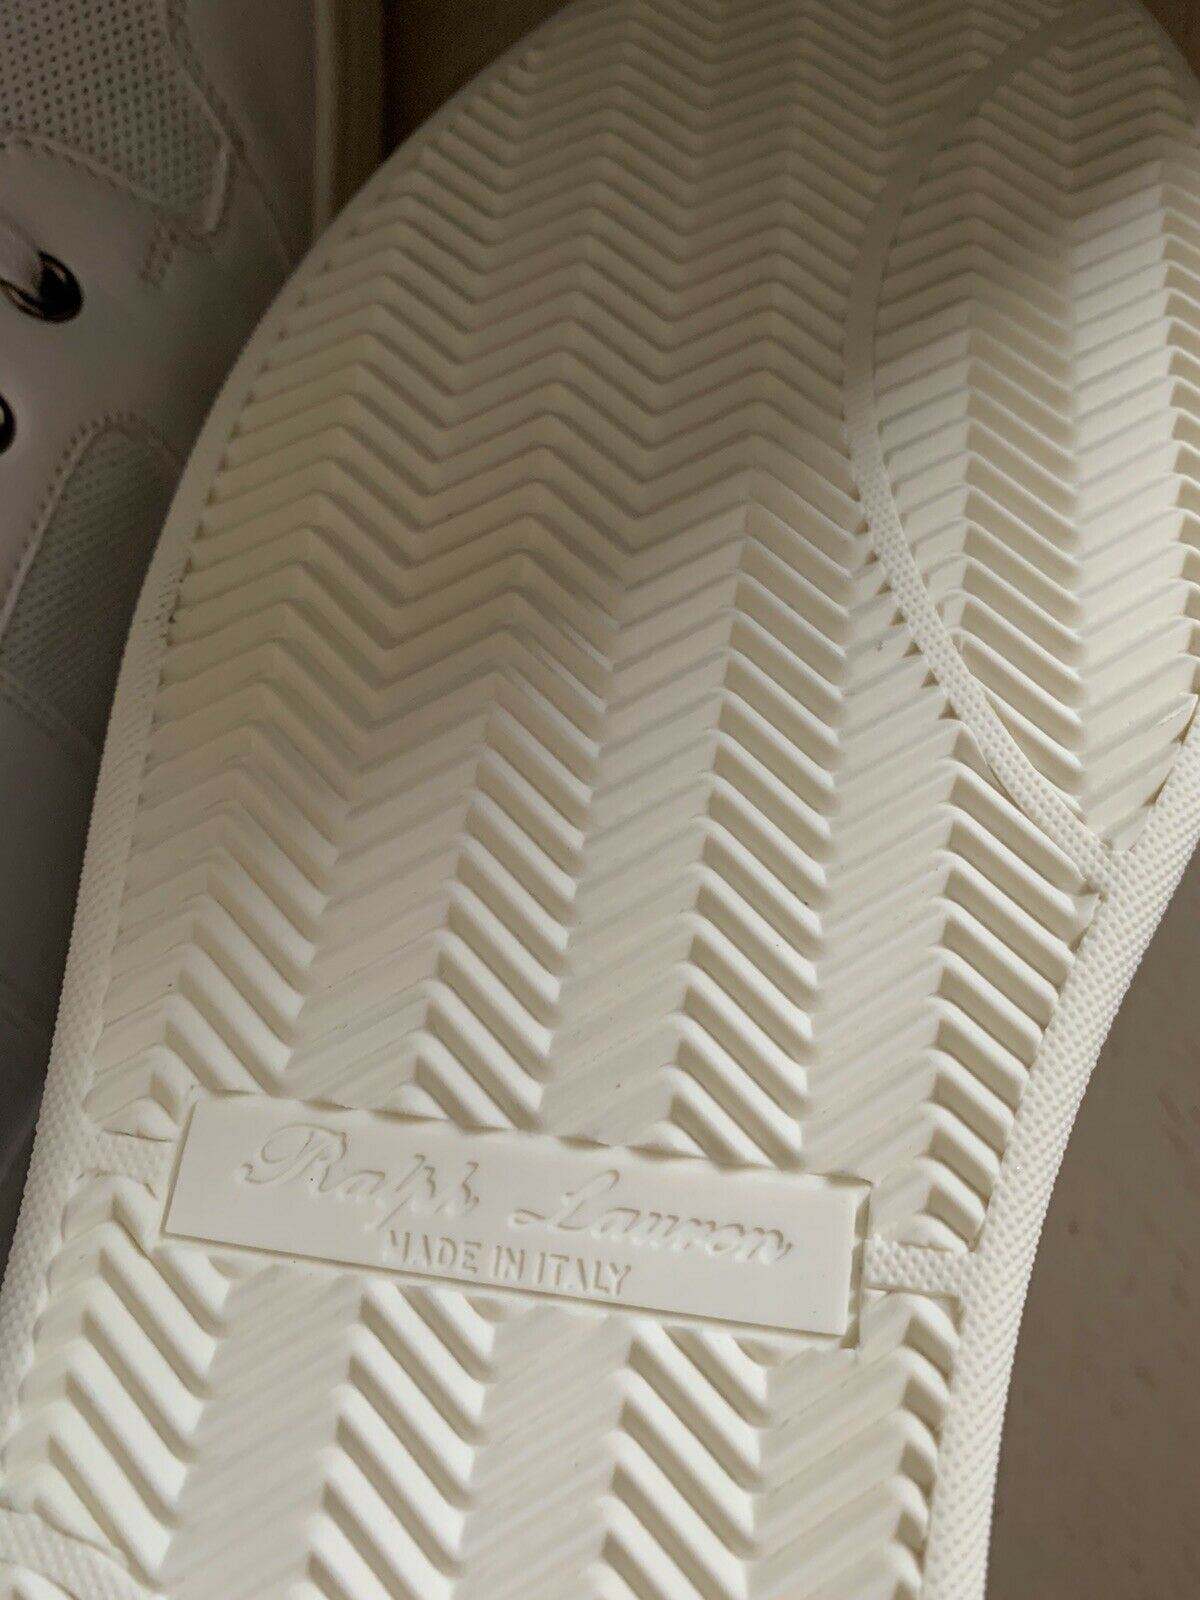 New $850 Ralph Lauren Purple Label Men High Top Sneakers Shoes White 11.5 US Ita